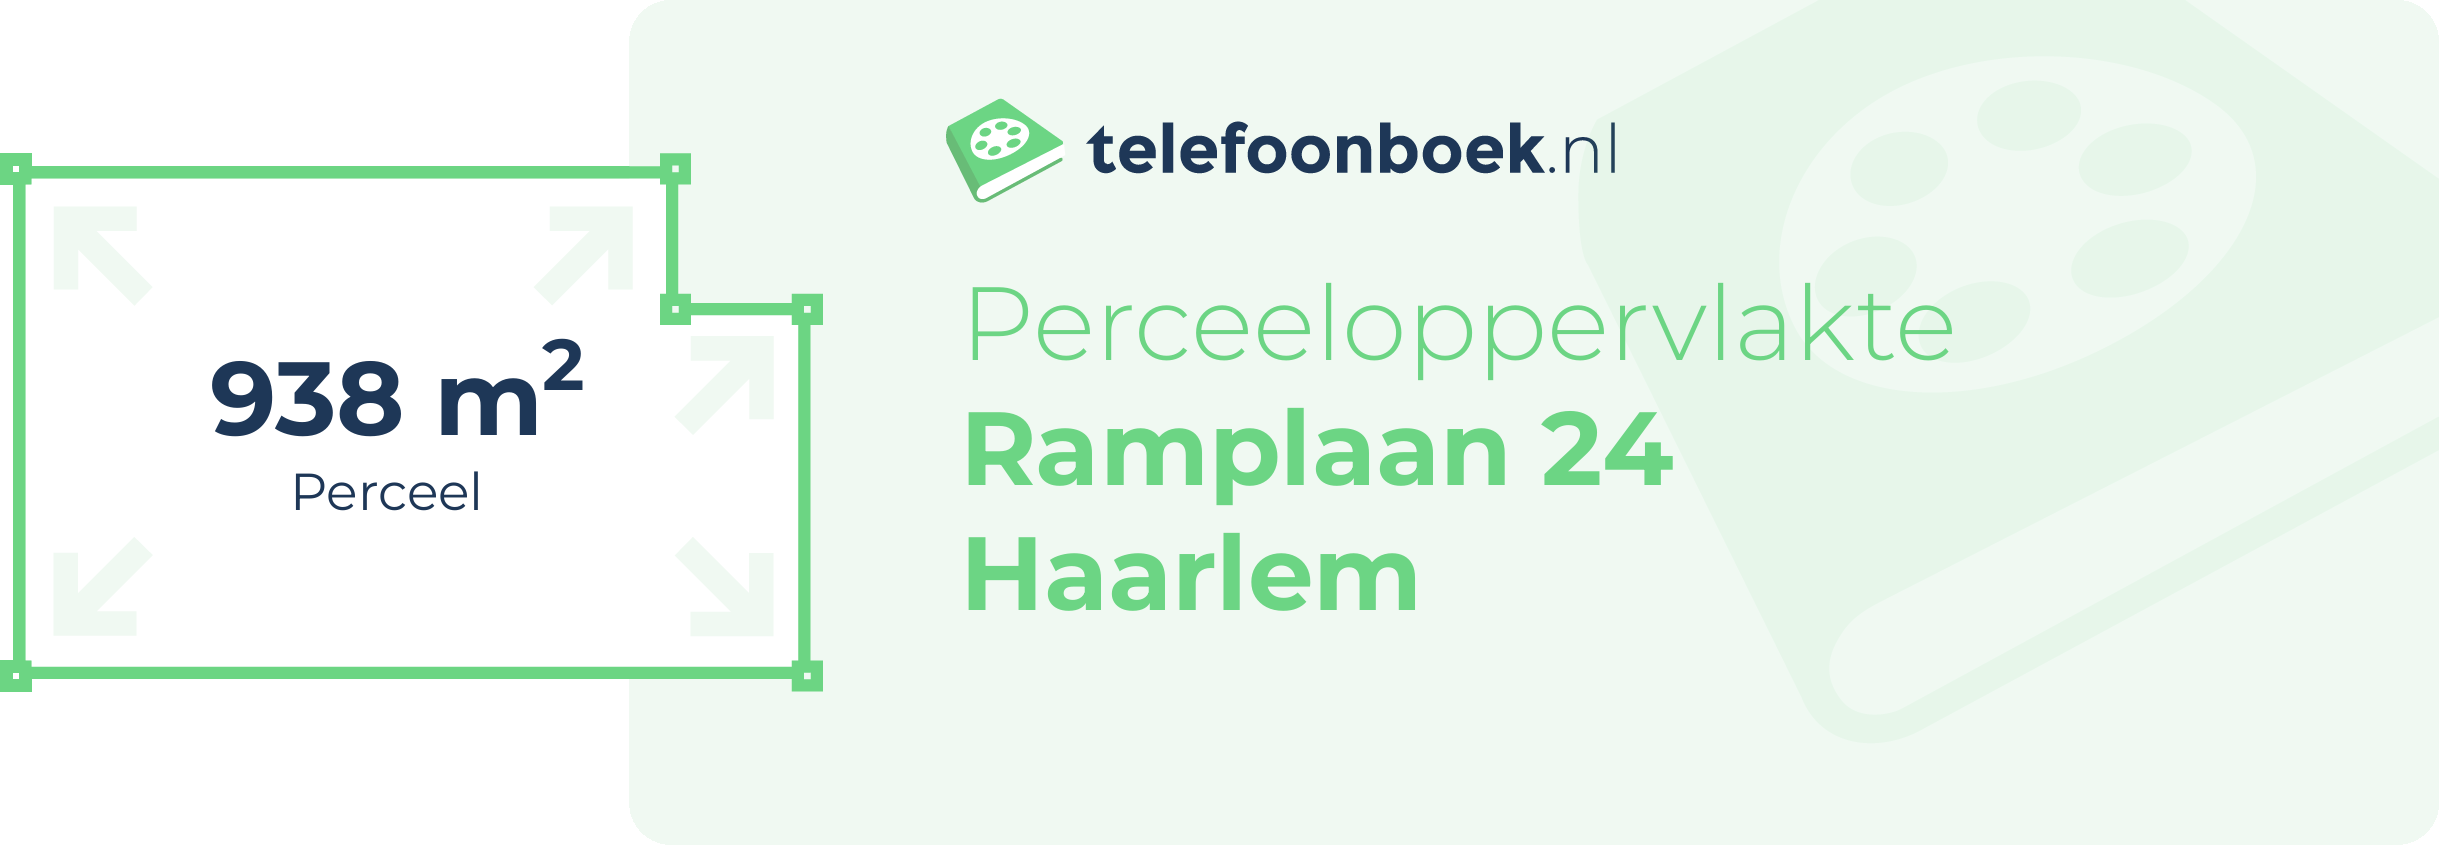 Perceeloppervlakte Ramplaan 24 Haarlem